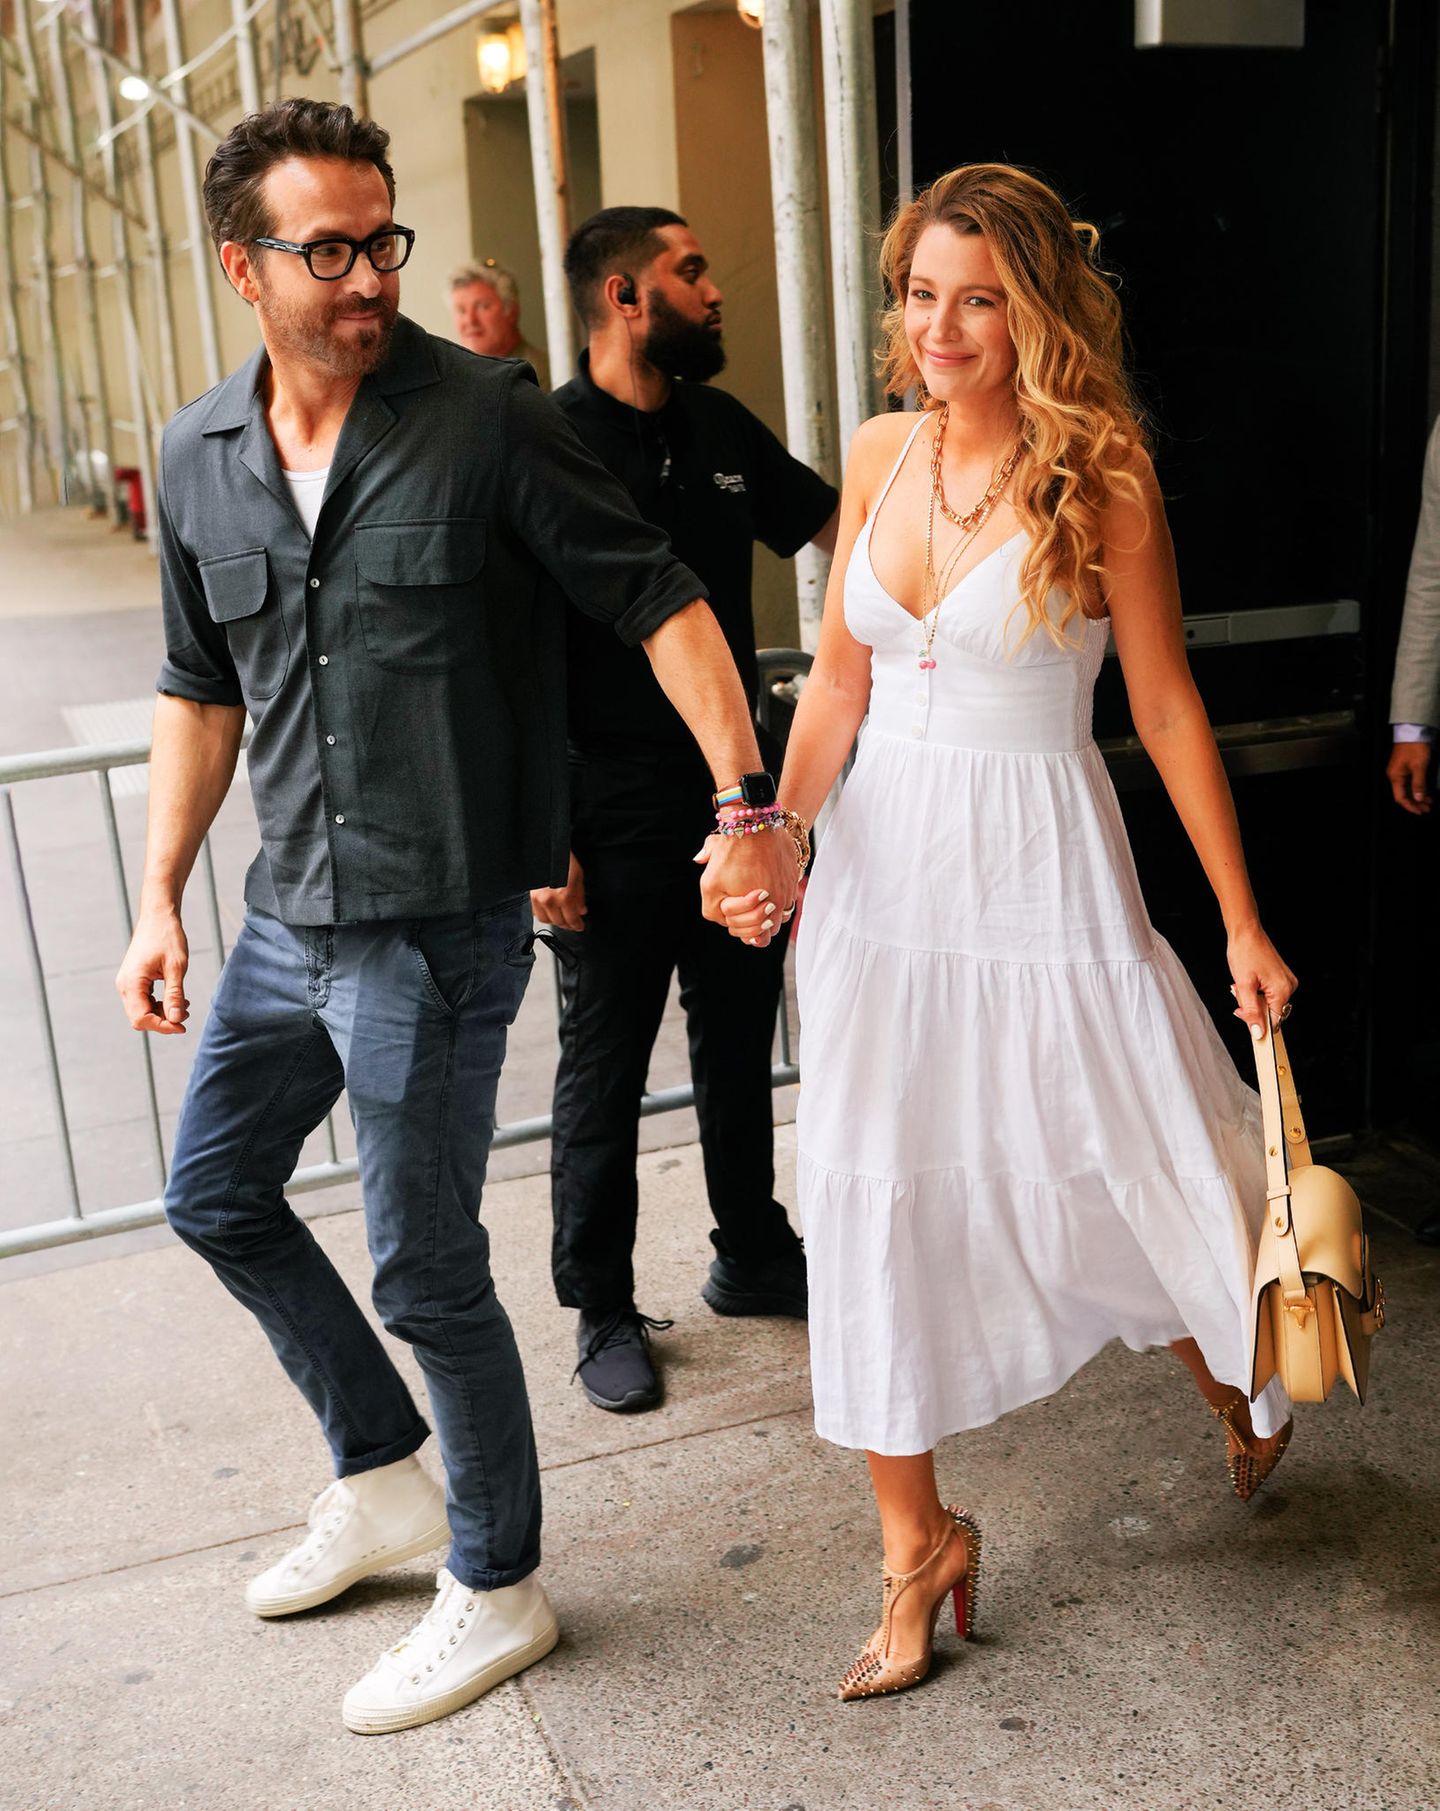 Gut gelaunt zeigen sich Ryan Reynolds und Blake Lively in New York. Für eine entspannte Date-Night setzt Ryan auf eine dunkle Jeans und ein dunkles Hemd. Blake lässt es hingegen um einiges heller angehen und erinnert mit ihrem weißen Kleid und ihren Korkenzieherlocken überraschend stark an ihre beste Freundin Taylor Swift, die vor einigen Jahren regelmäßig auf den romantischen Stil gesetzt hat.